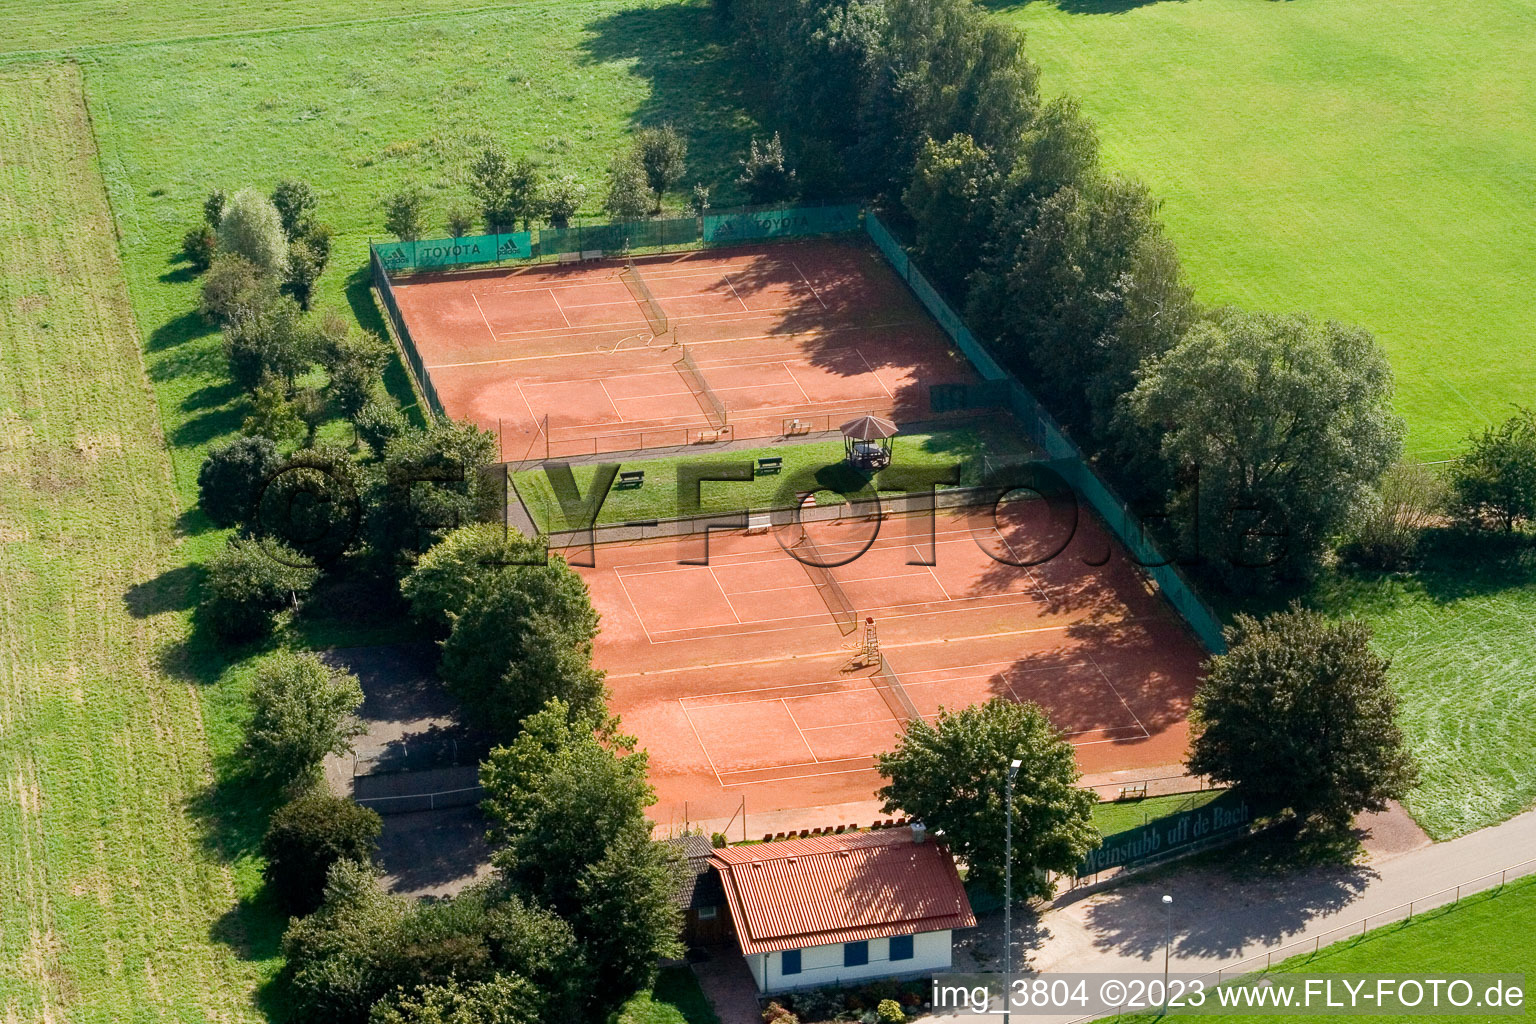 Photographie aérienne de Club de tennis à Minfeld dans le département Rhénanie-Palatinat, Allemagne